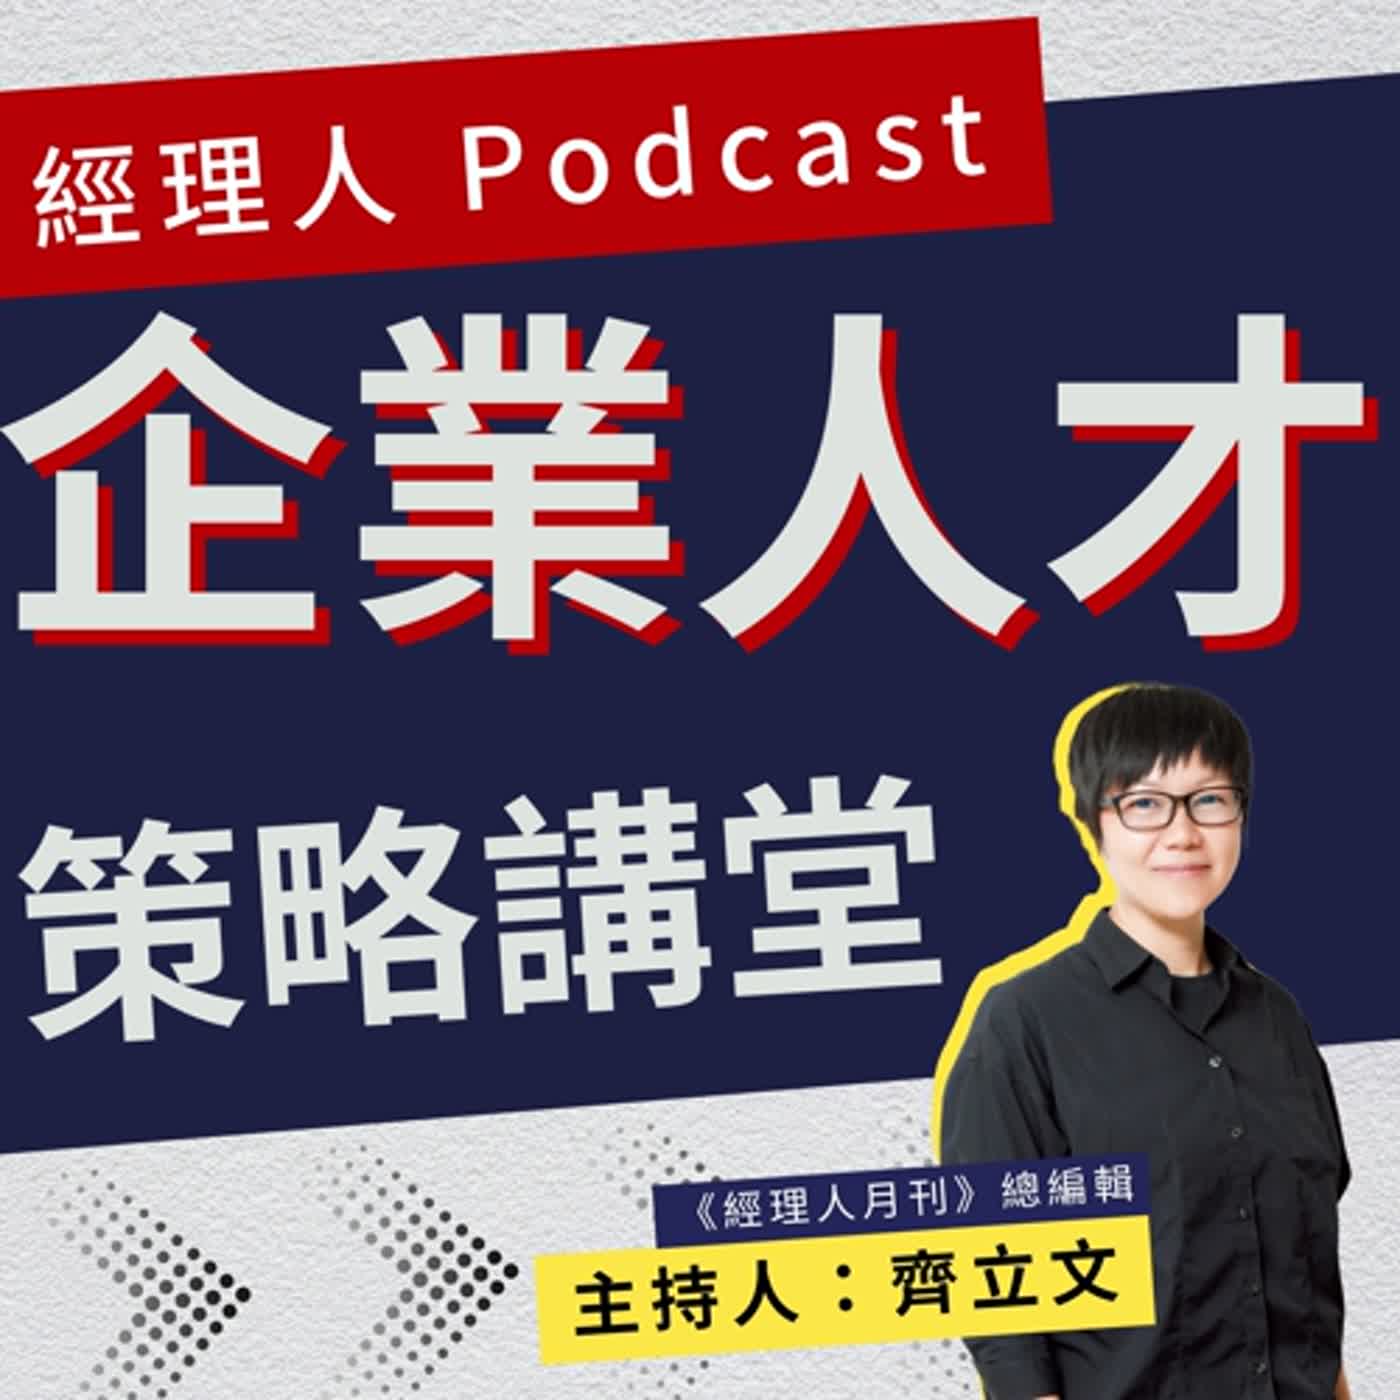 【企業人才策略講堂】EP01 台灣麥當勞正職人員離職率僅 10%，如何突破缺工魔咒？經驗不拘不是誰來都可以，而是「你來我會好好教你」